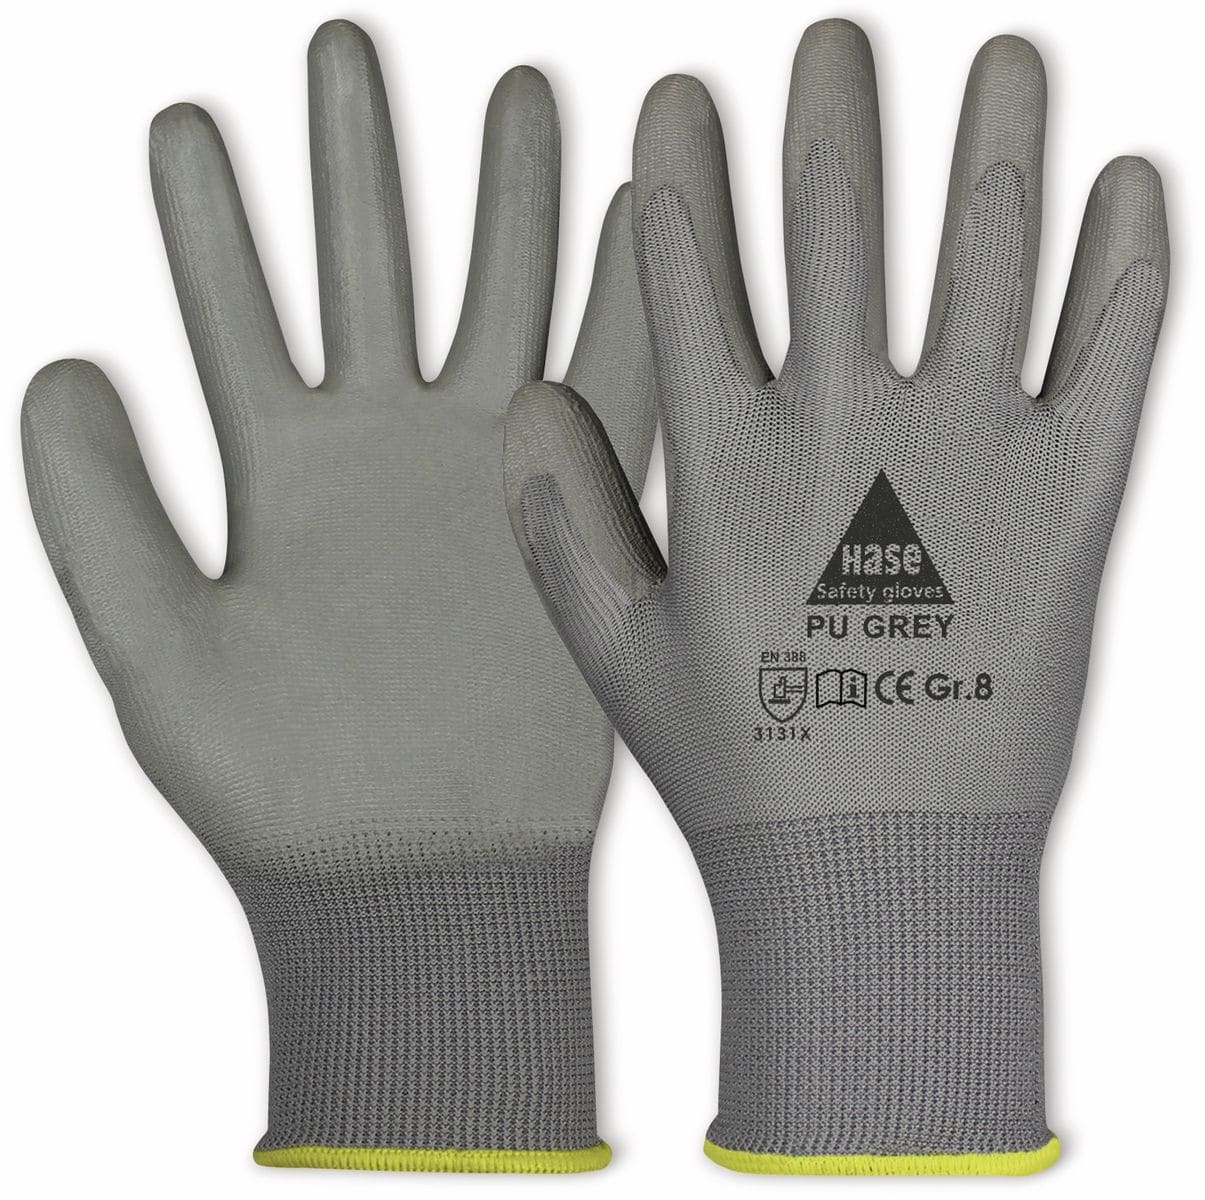 HASE SAFETY GLOVES Arbeitshandschuhe PU, PU grey, EN 388, EN 420, grau, Größe 9 von Hase Safety gloves